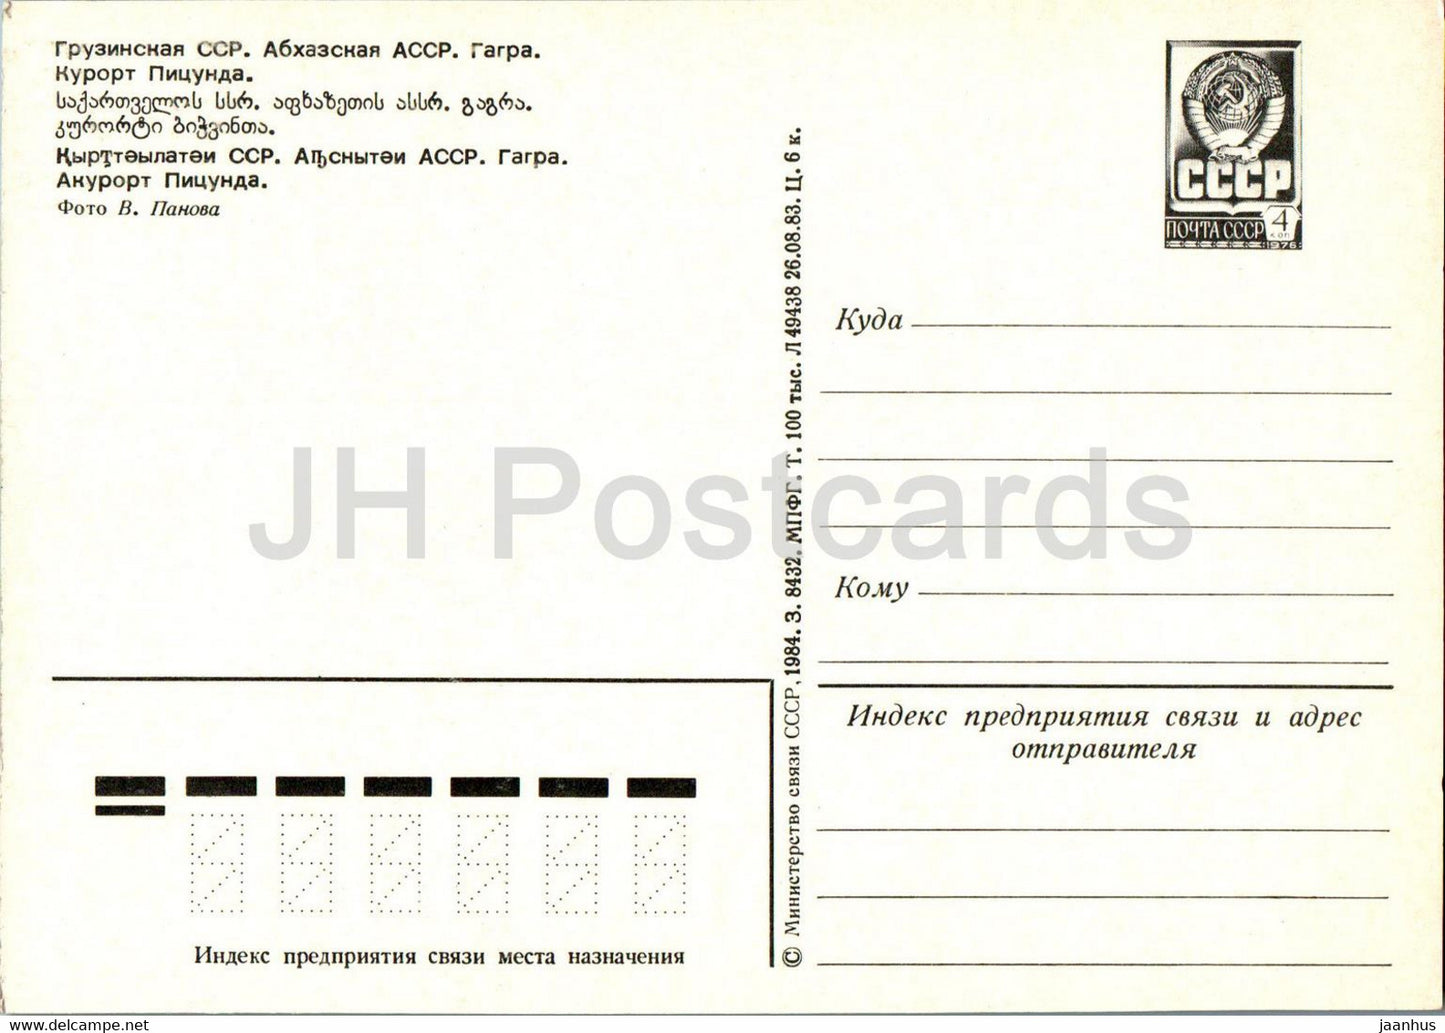 Gagra - Pitsunda resort - entier postal - 1984 - Géorgie URSS - inutilisé